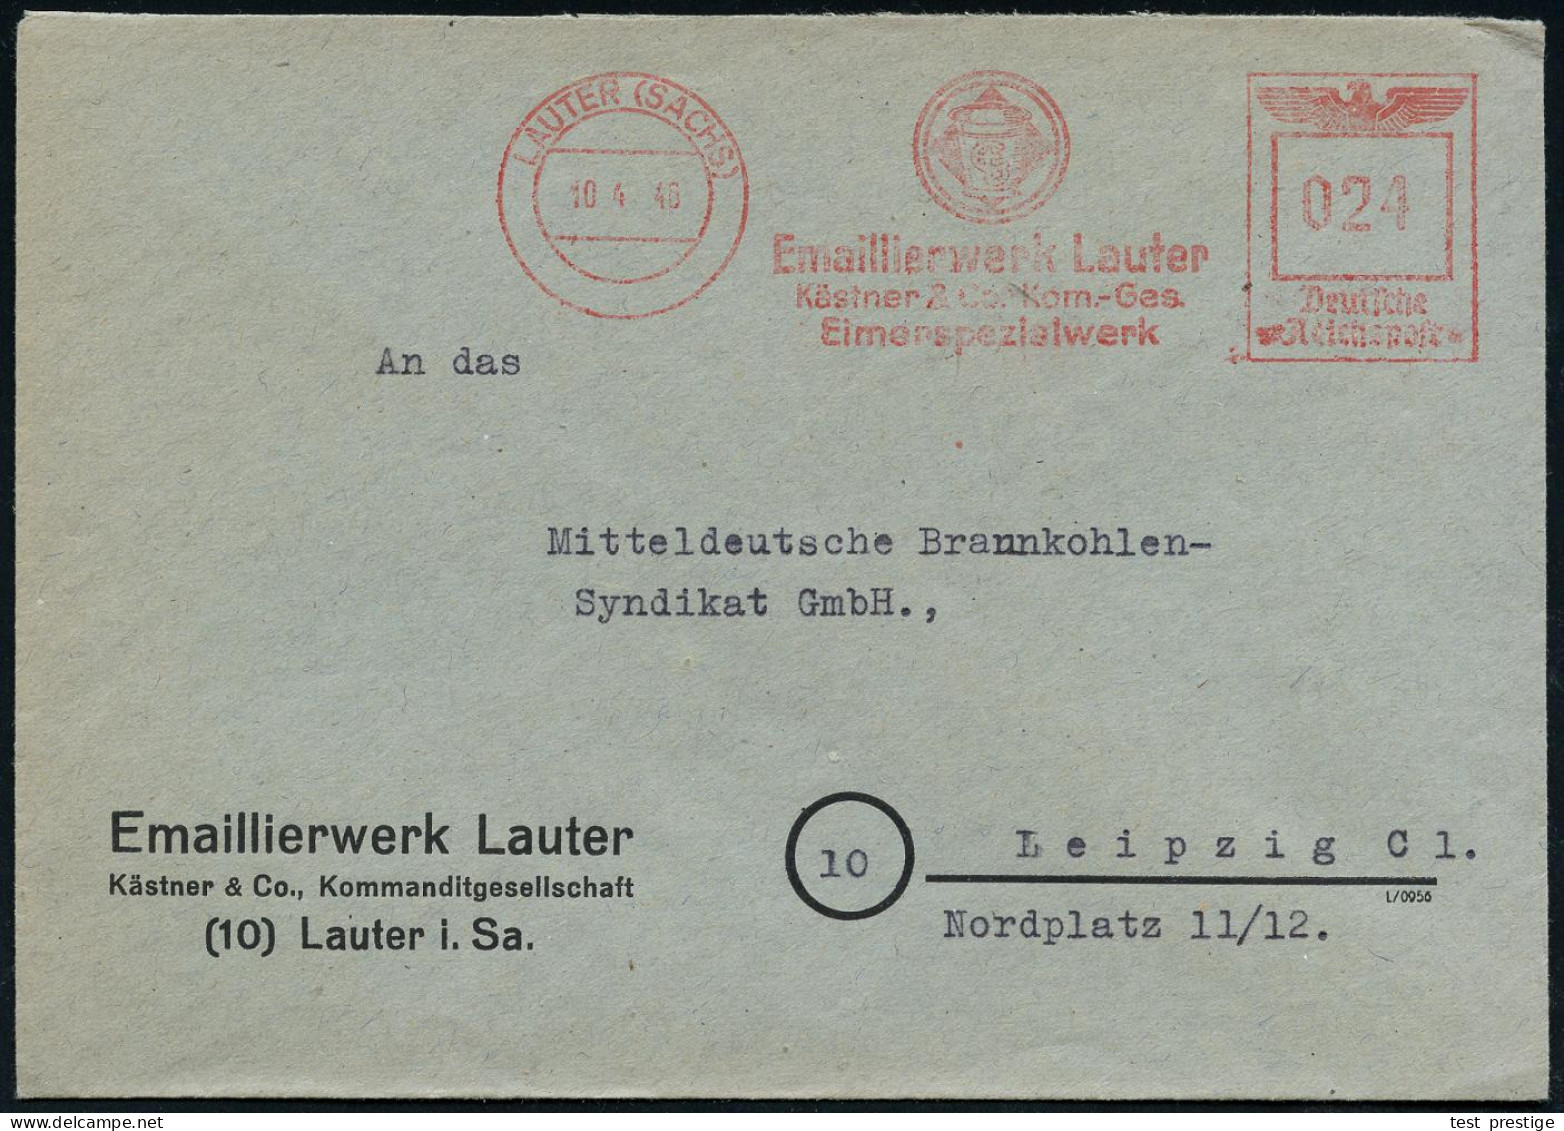 LAUTER (SACHS)/ Emaillierwerk Lauter/ Kästner & Co, Kom.-Ges./ Eimerspezialwerk 1946 (10.4.) Seltener AFS Francotyp "Rei - Chemistry